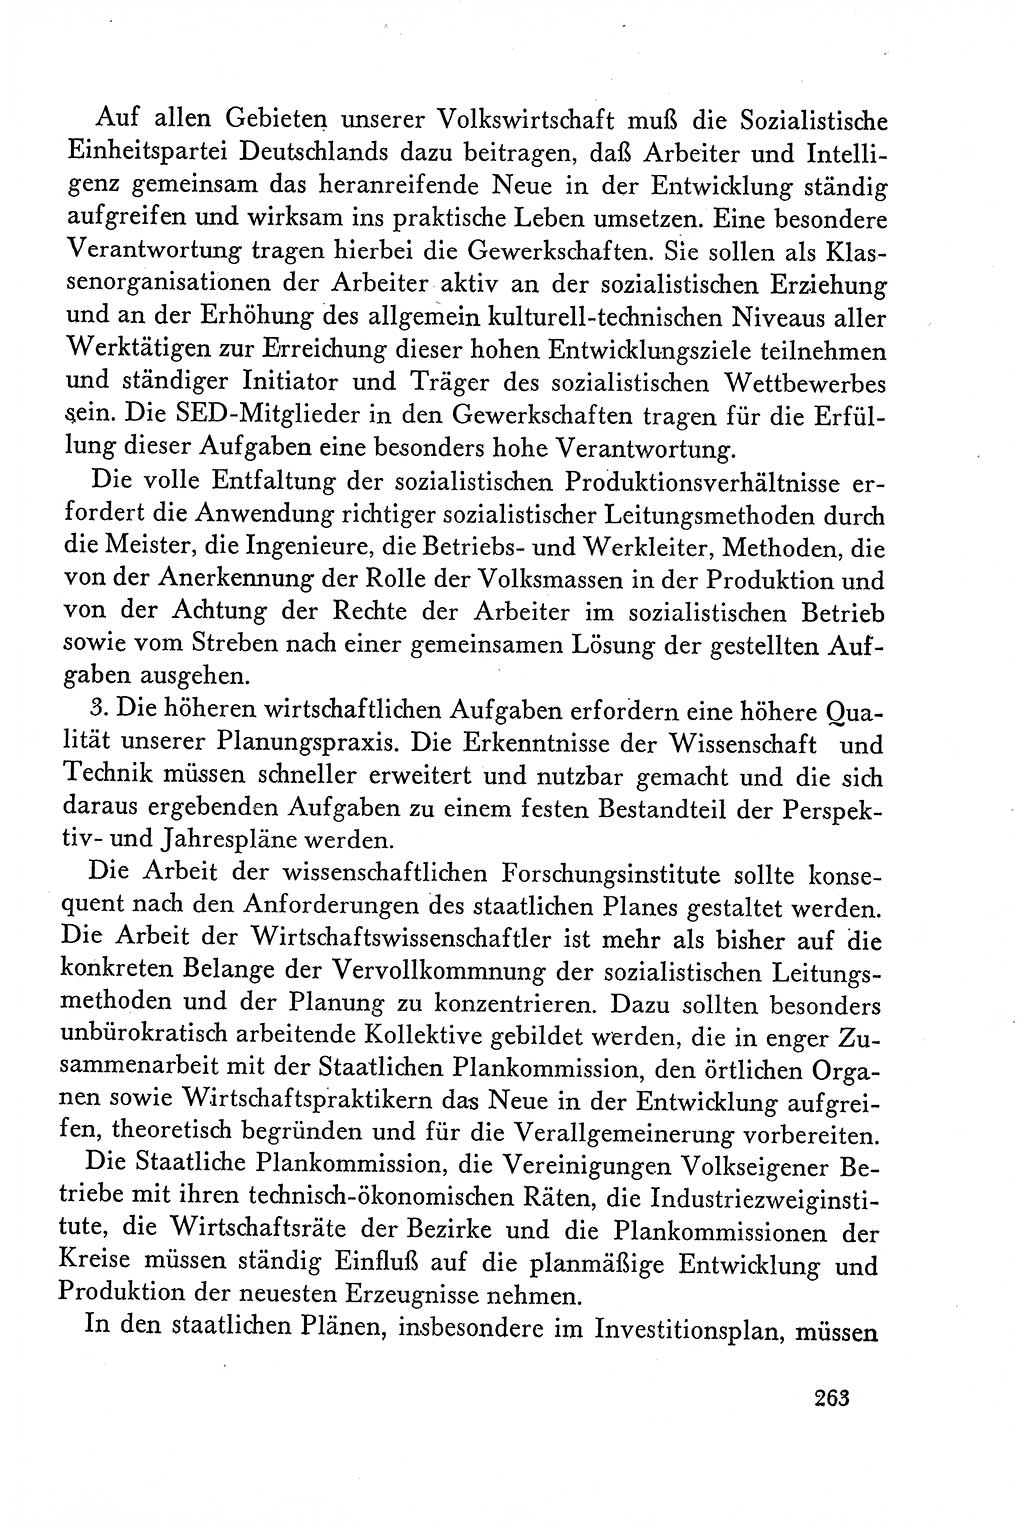 Dokumente der Sozialistischen Einheitspartei Deutschlands (SED) [Deutsche Demokratische Republik (DDR)] 1958-1959, Seite 263 (Dok. SED DDR 1958-1959, S. 263)